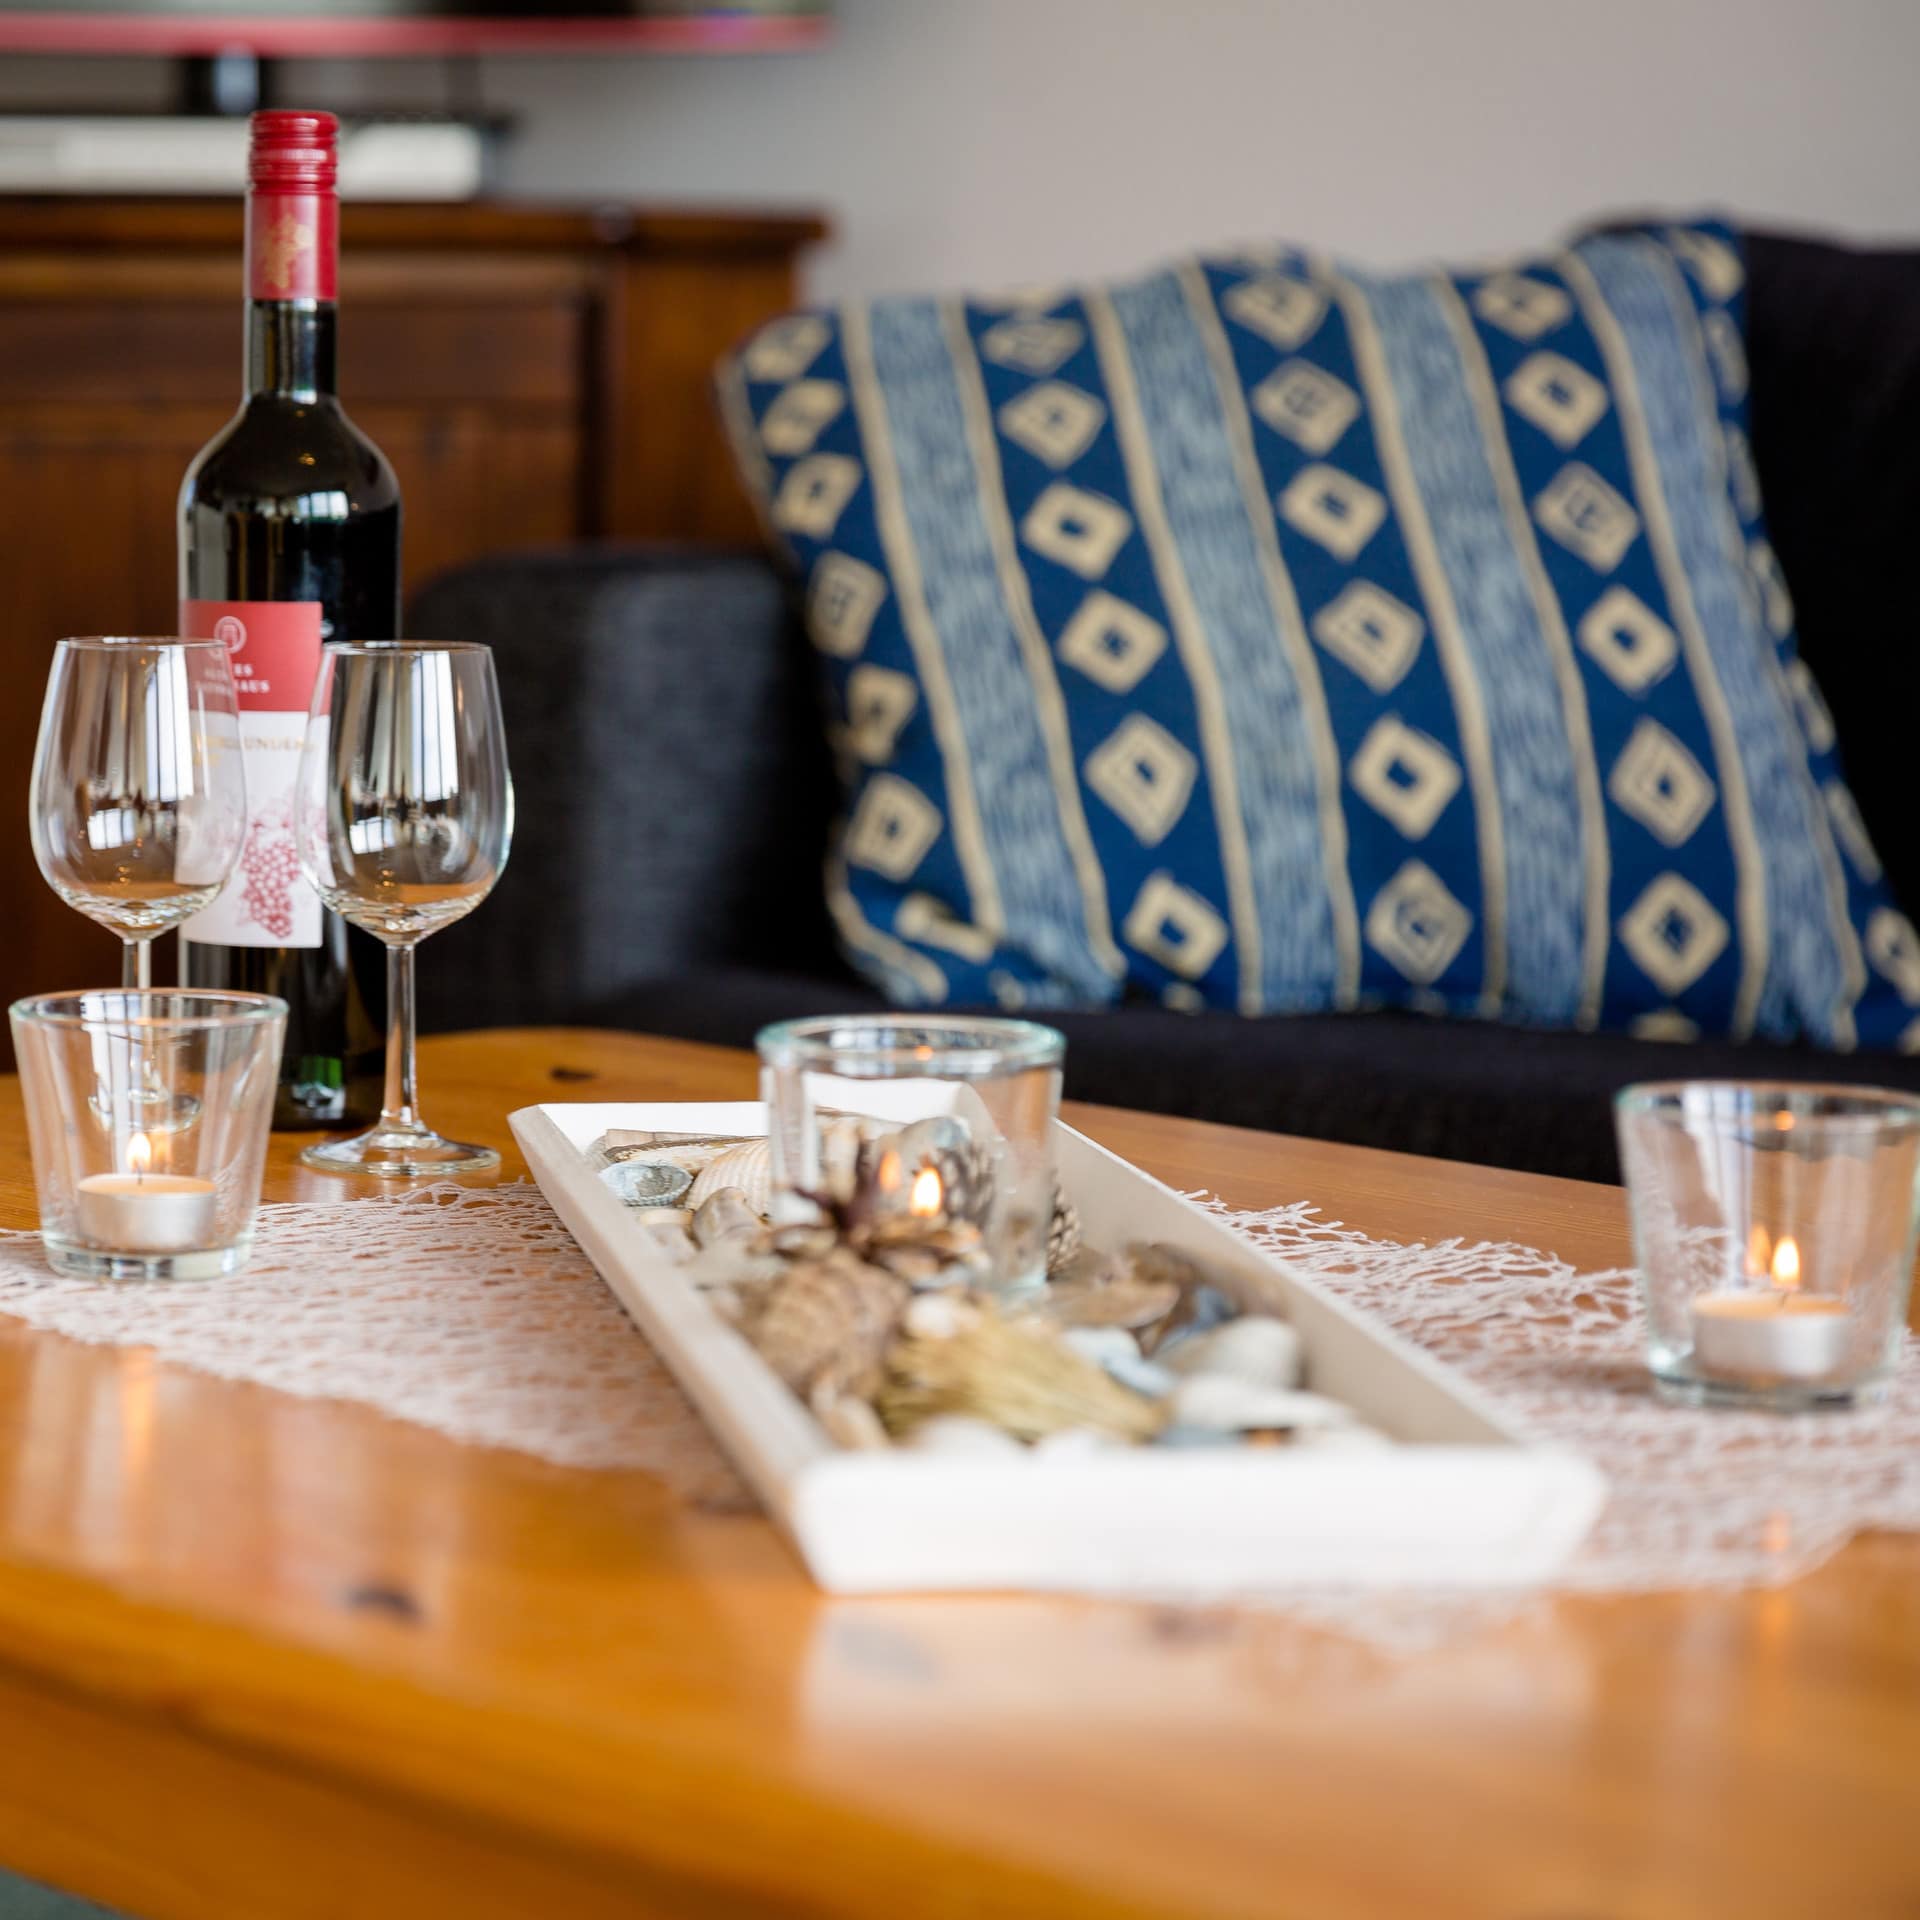 Ferienwohnung auf Ameland mit Sofa und Tisch, darauf eine Flasche Wein und zwei Gläser sowie Kerzen